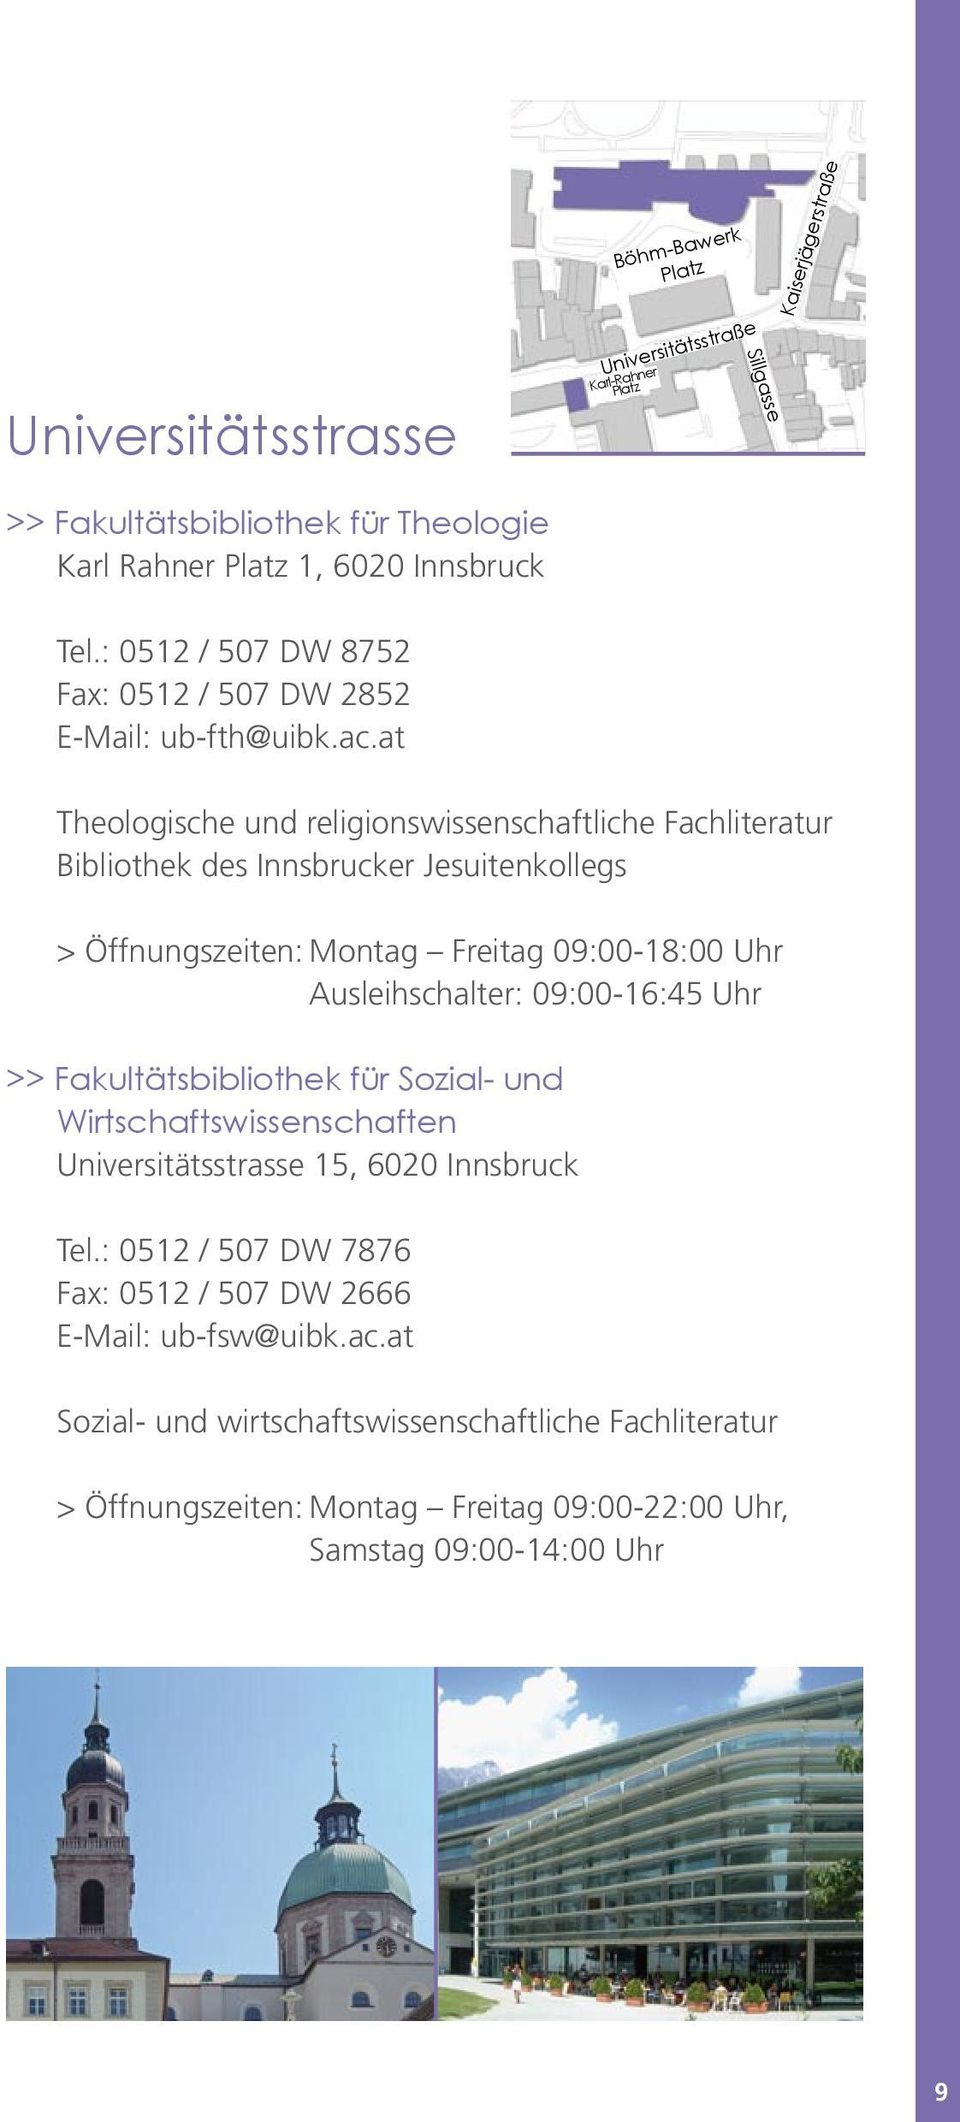 at Theologische und religionswissenschaftliche Fachliteratur Bibliothek des Innsbrucker Jesuitenkollegs > Öffnungszeiten: Montag Freitag 09:00-18:00 Uhr Ausleihschalter: 09:00-16:45 Uhr